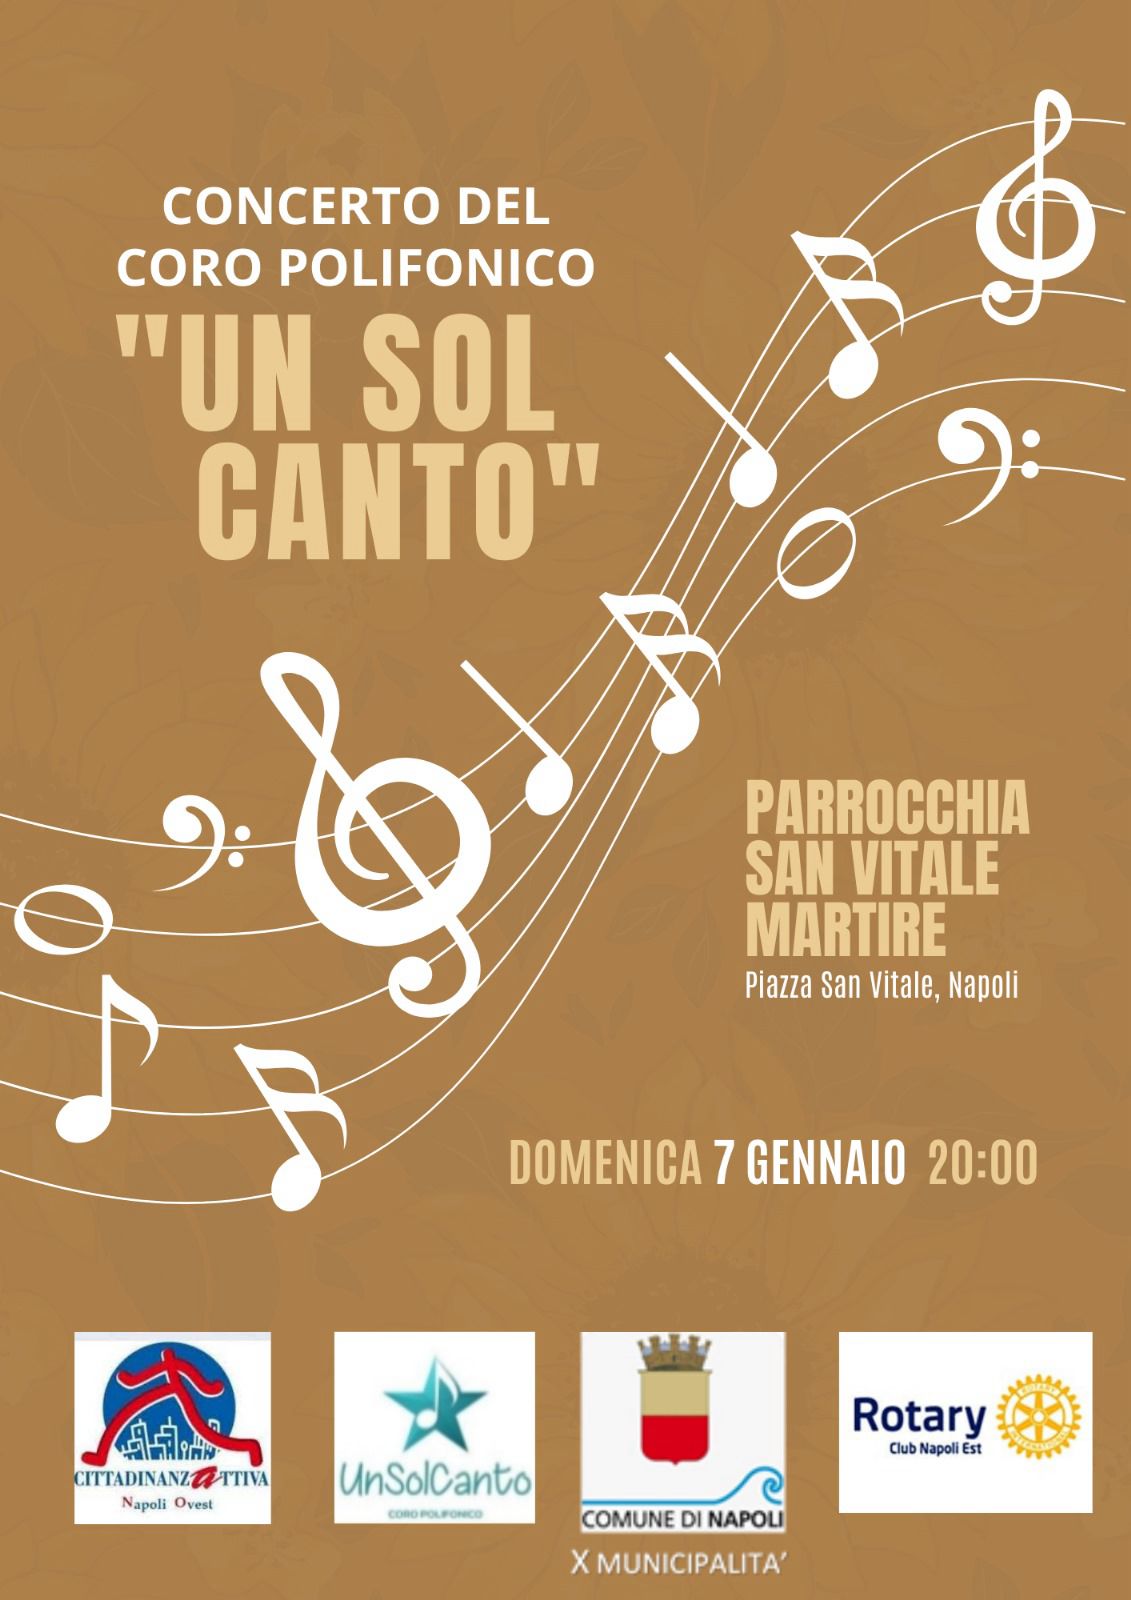 Il concerto del coro polifonico "Un Sol Canto" chiude le festività natalizie